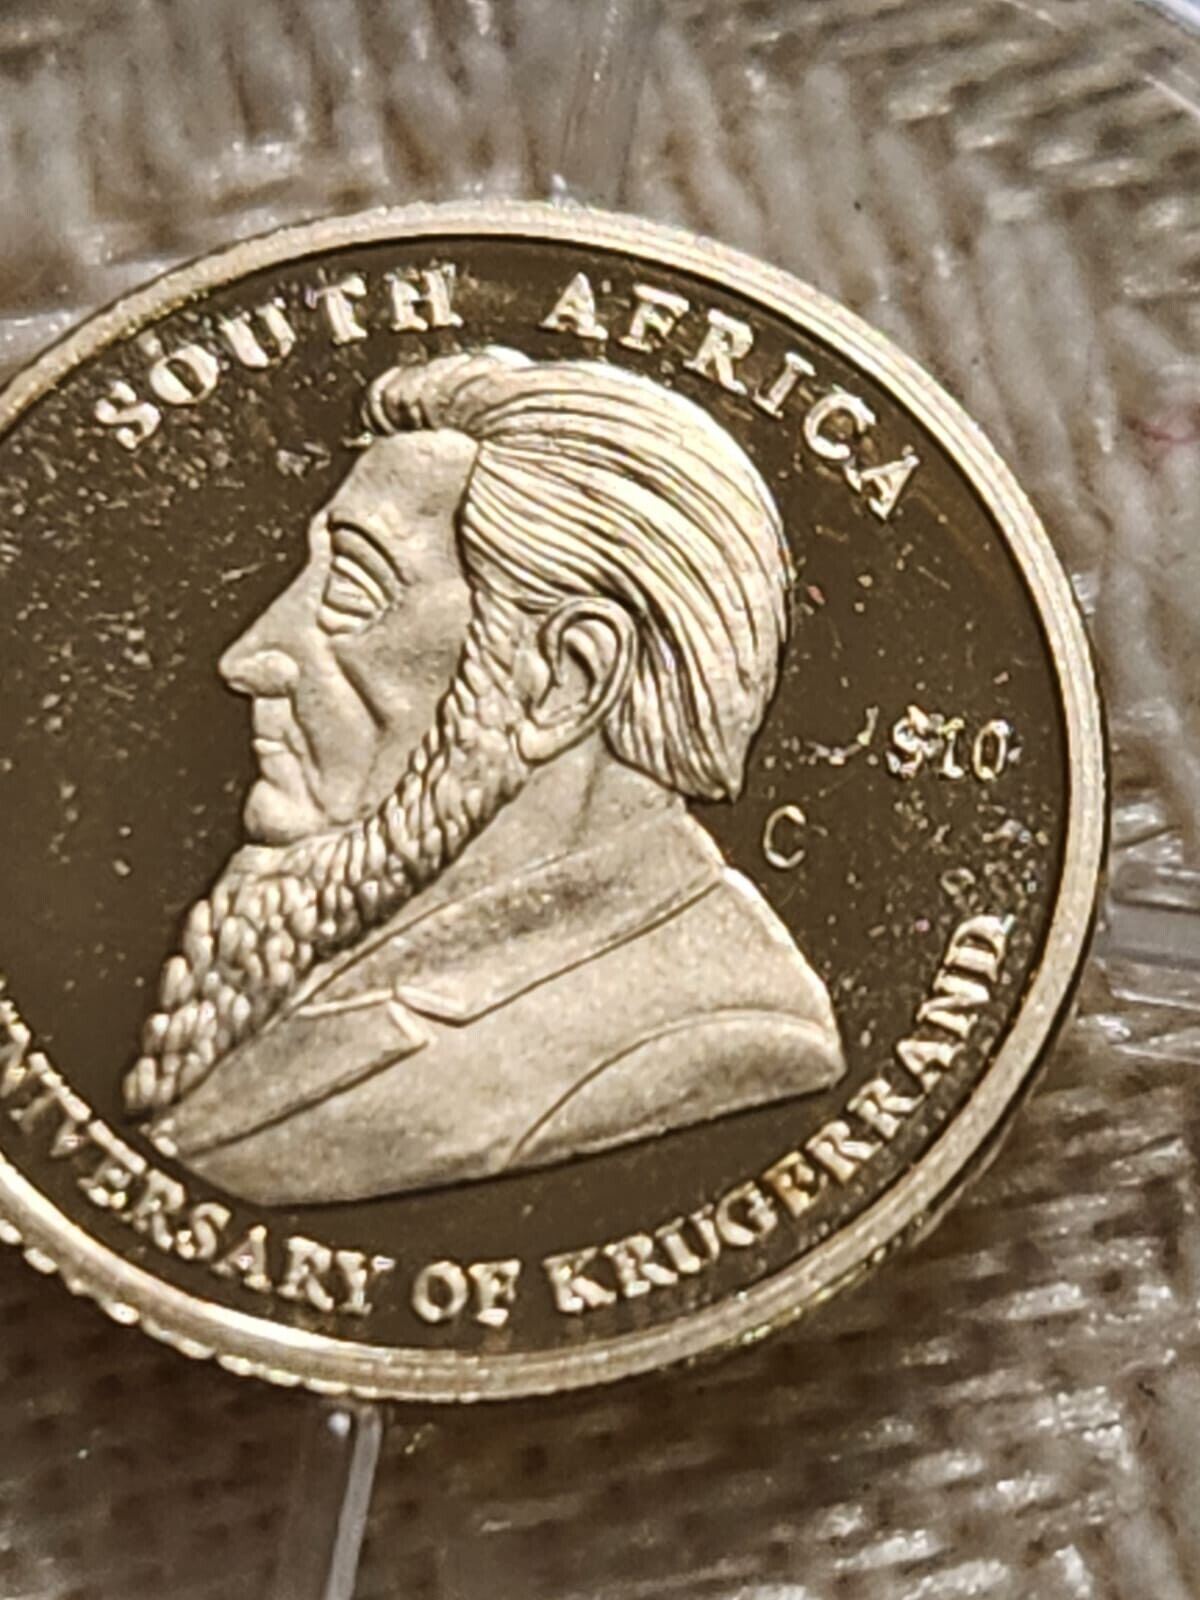 Liberia 2005 $10 Smallest Gold Mini Coin Proof.CB8C